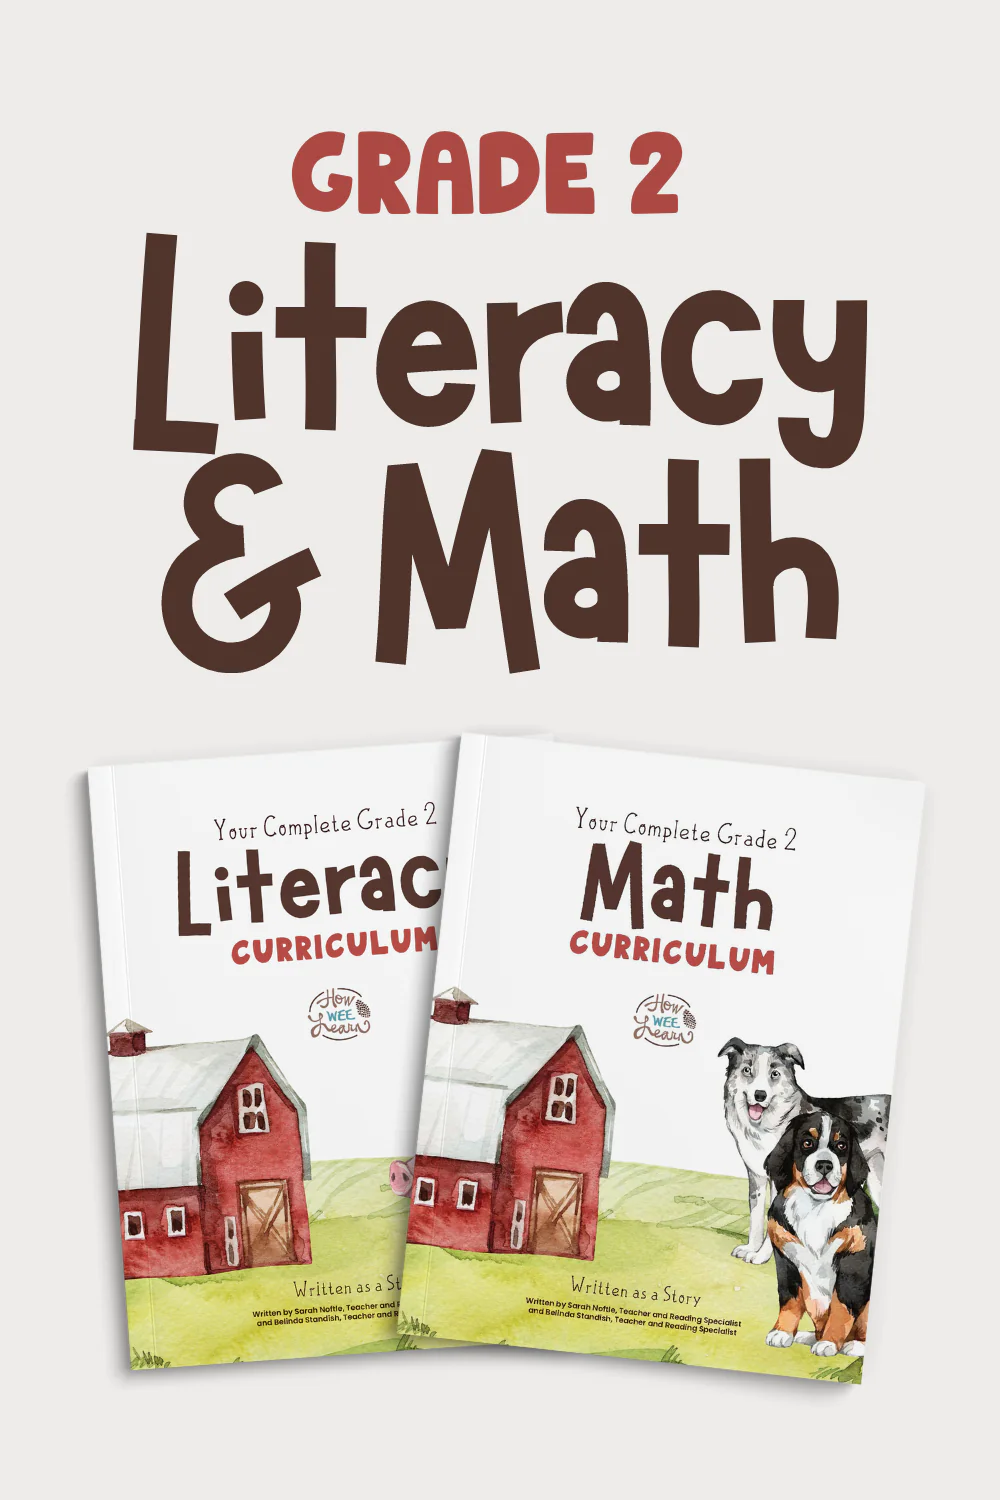 Grade 2 Literacy & Math Curriculum